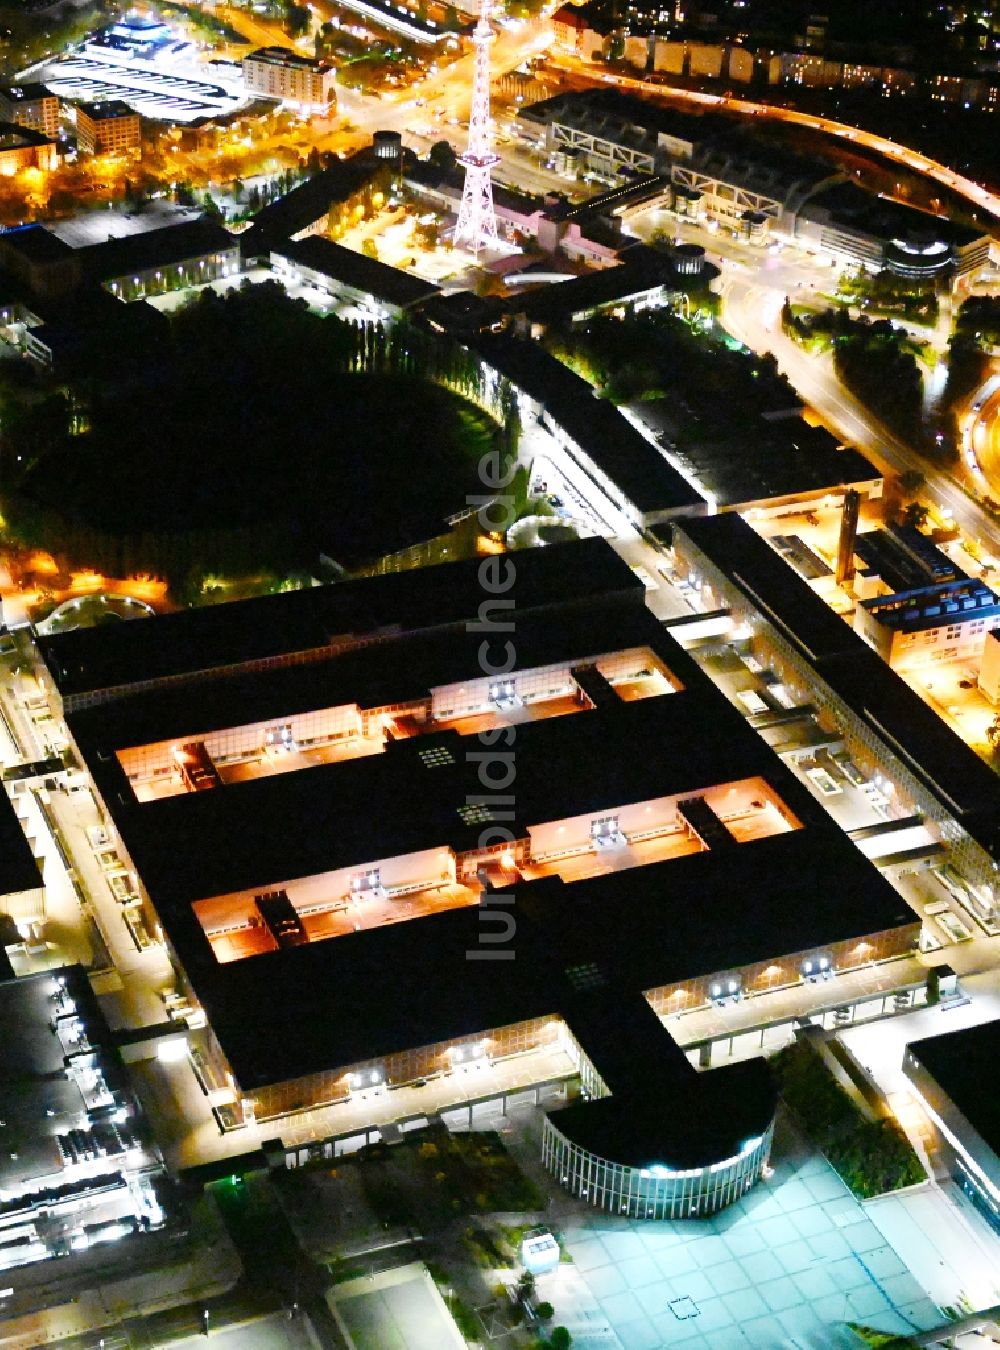 Nachtluftbild Berlin - Nachtluftbild Ausstellungsgelände und Messehallen - Messedamm im Ortsteil Charlottenburg in Berlin, Deutschland